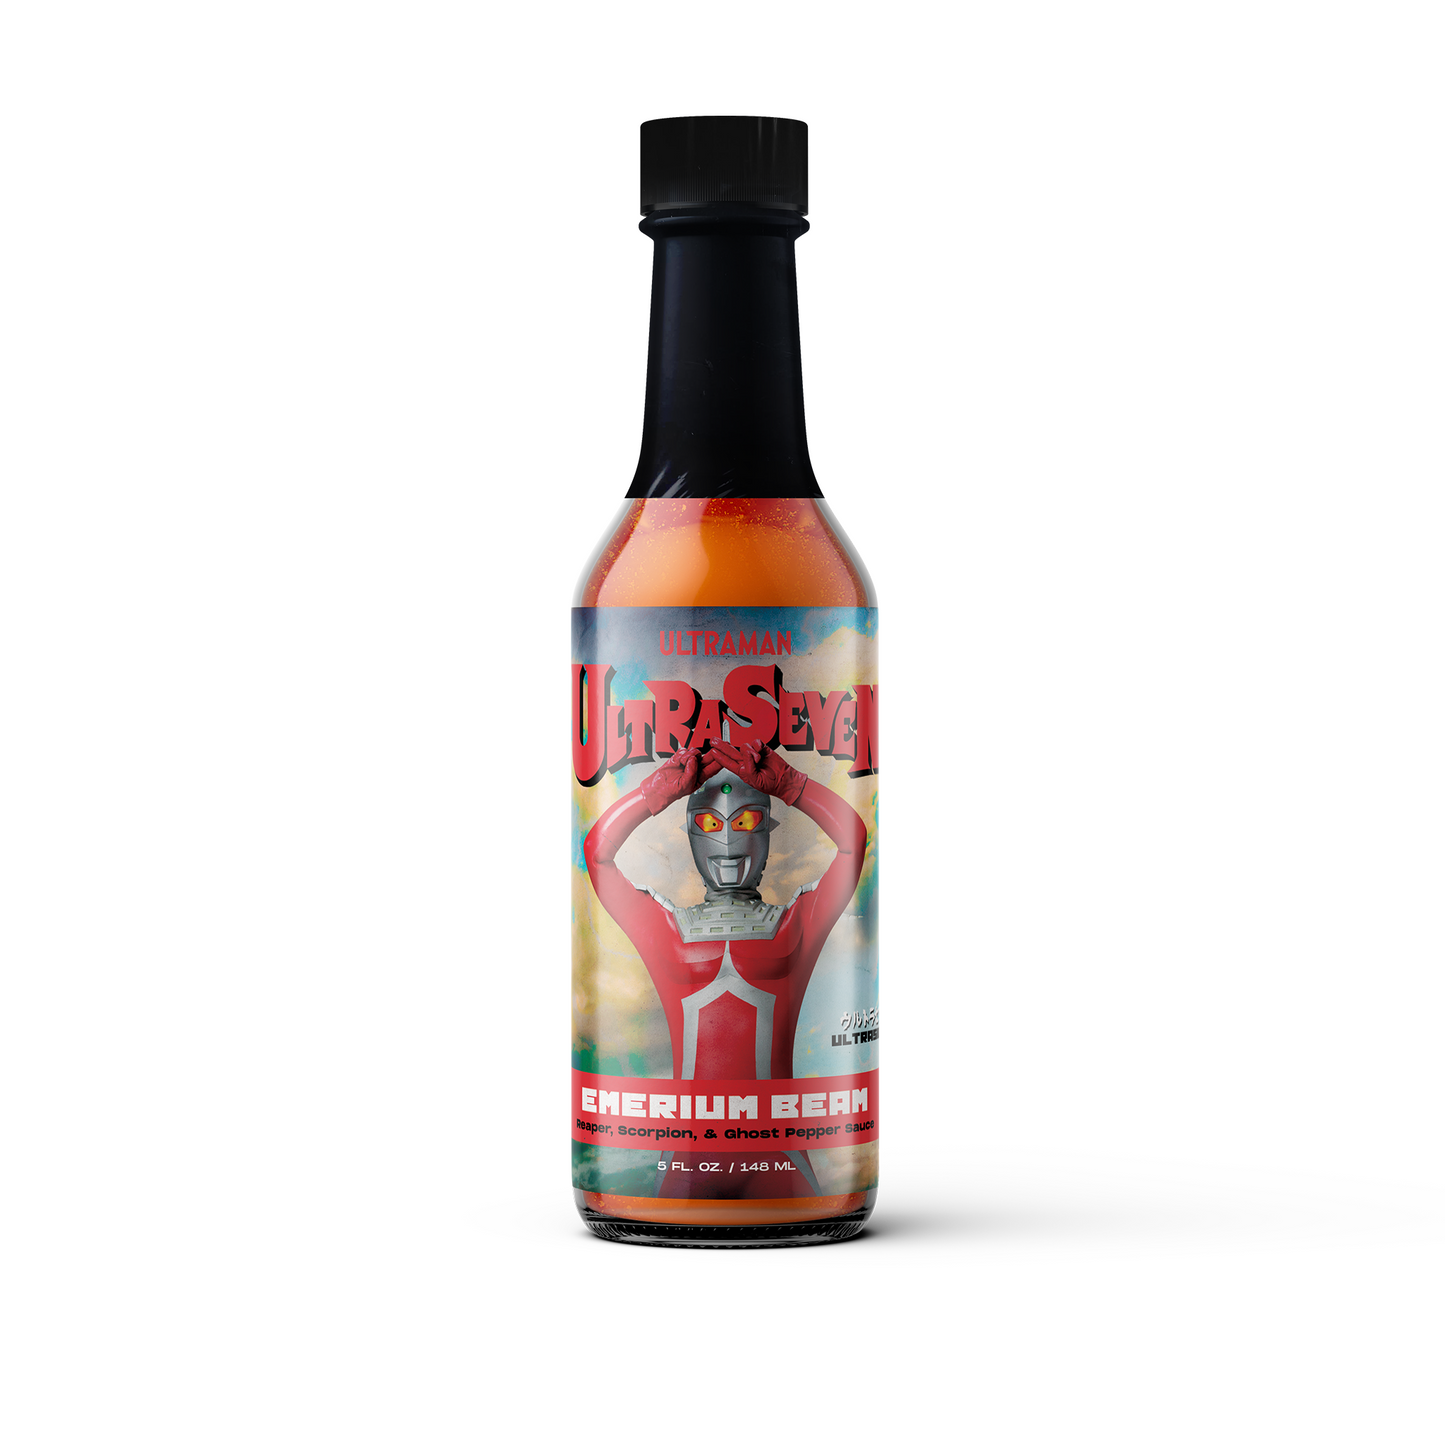 UltraSeven's Emerium Beam : Reaper, Scorpion, Ghost Pepper Sauce